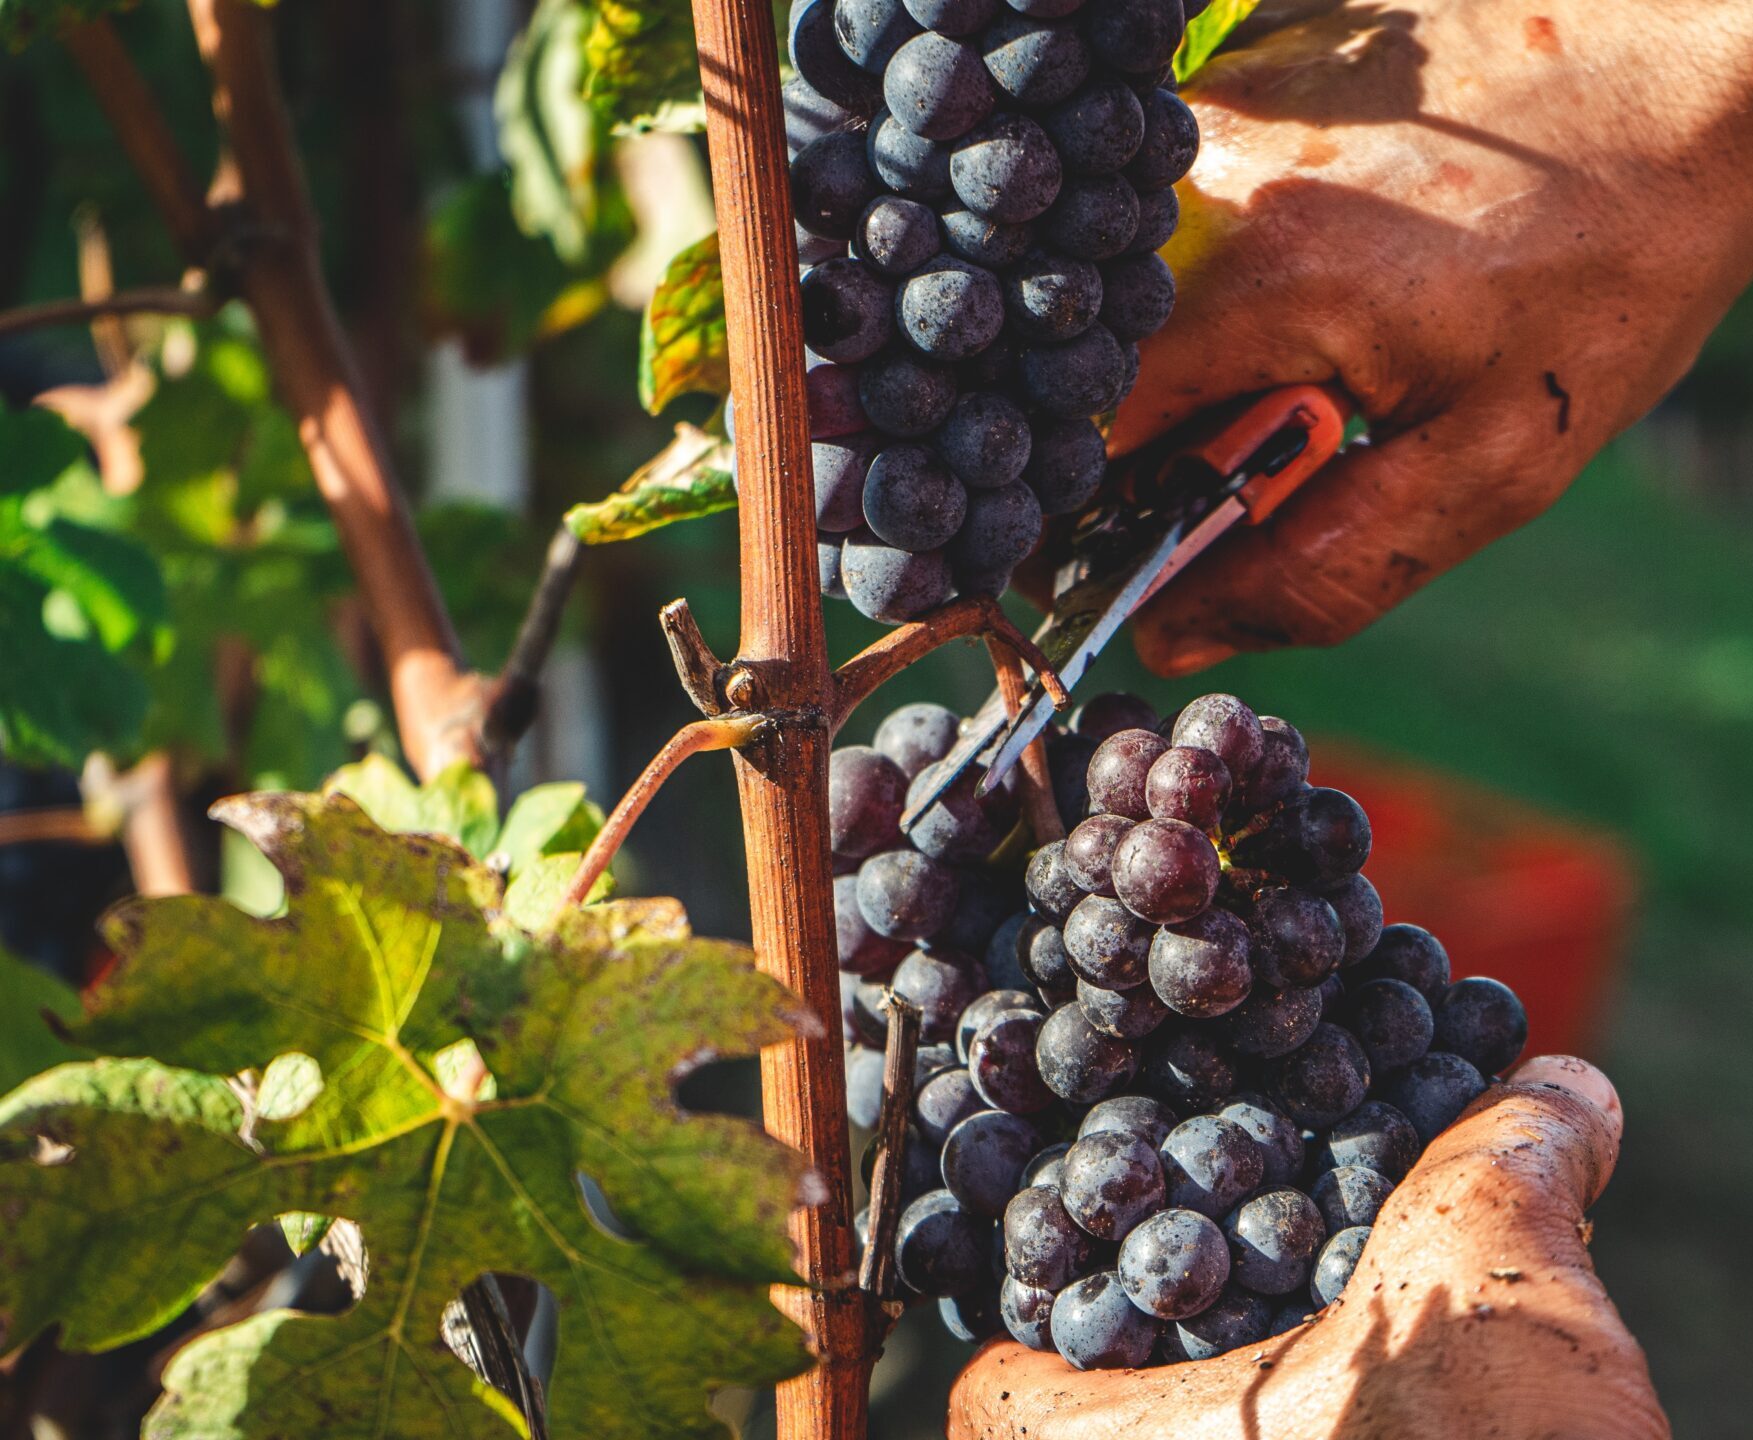 Personne cueillant des raisins. C'est le début du processus de vin durable et traçable.